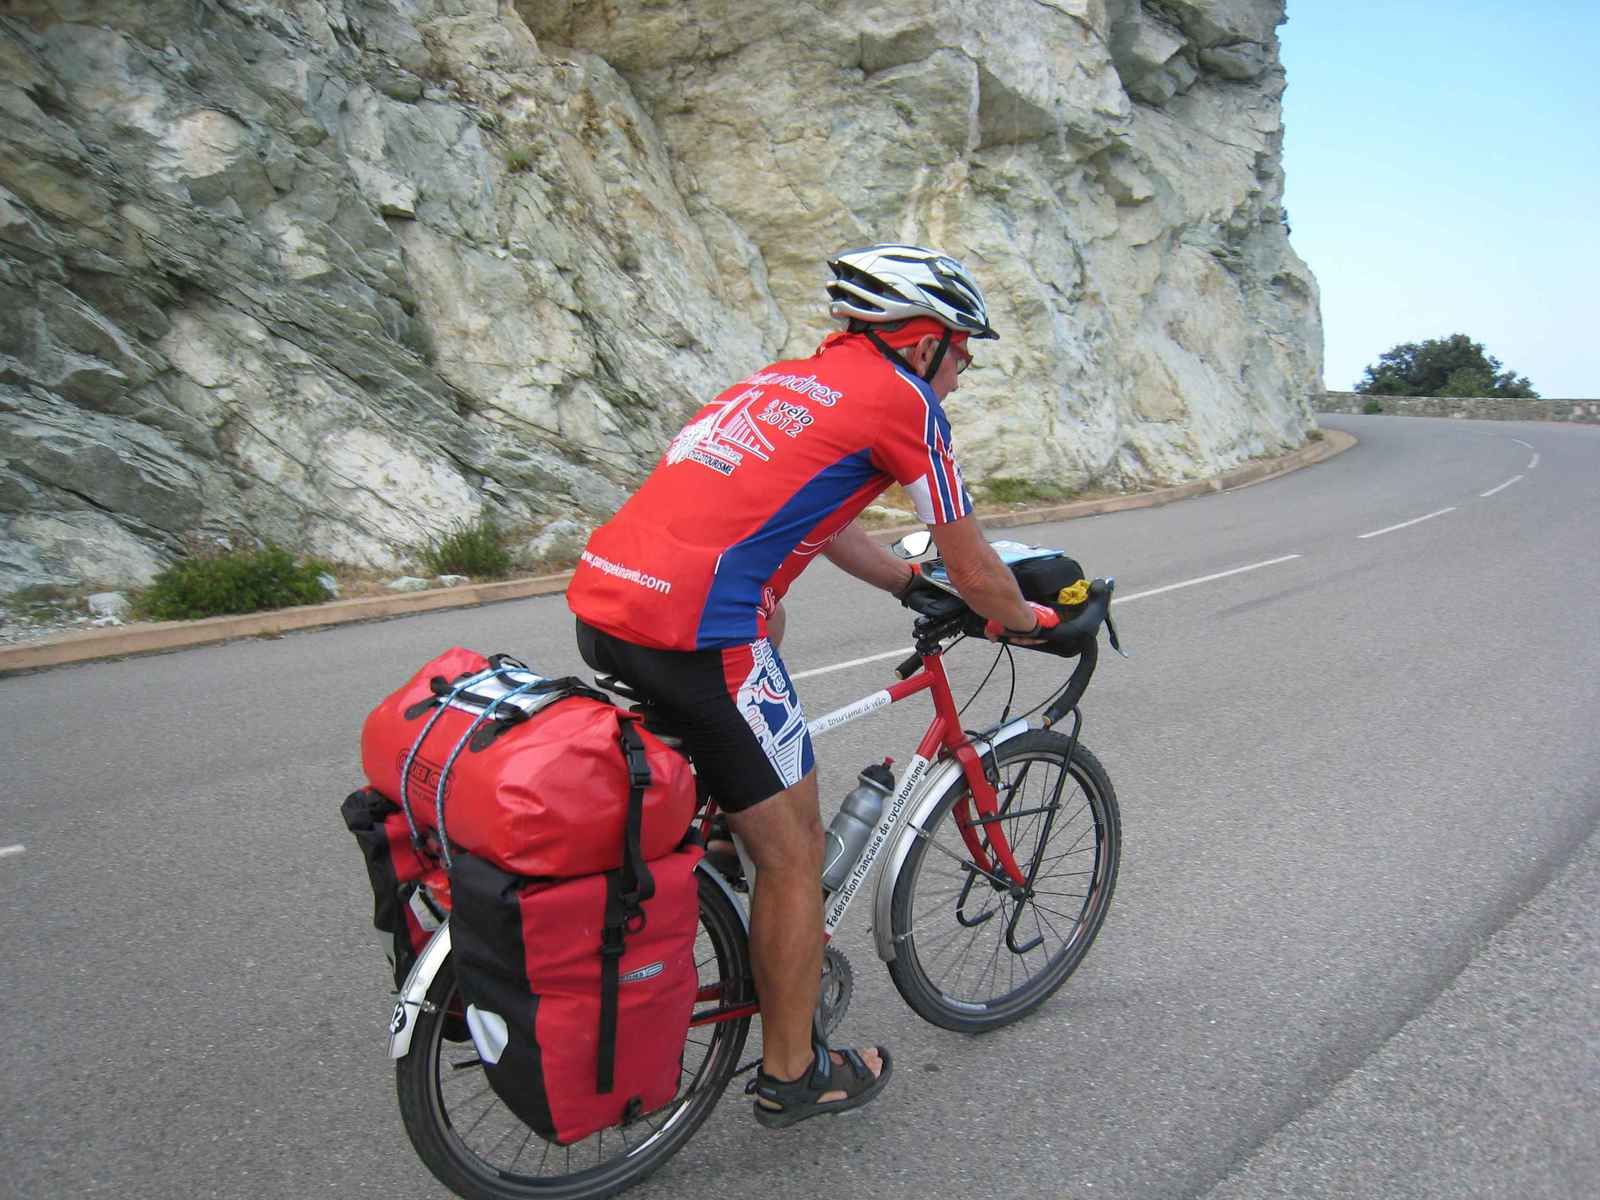 Corse à vélo 2014 : Carte de la Corse à vélo, le parcours et les étapes -  Blog de gatebourse Les Herbiers (France) - Voyages à vélo